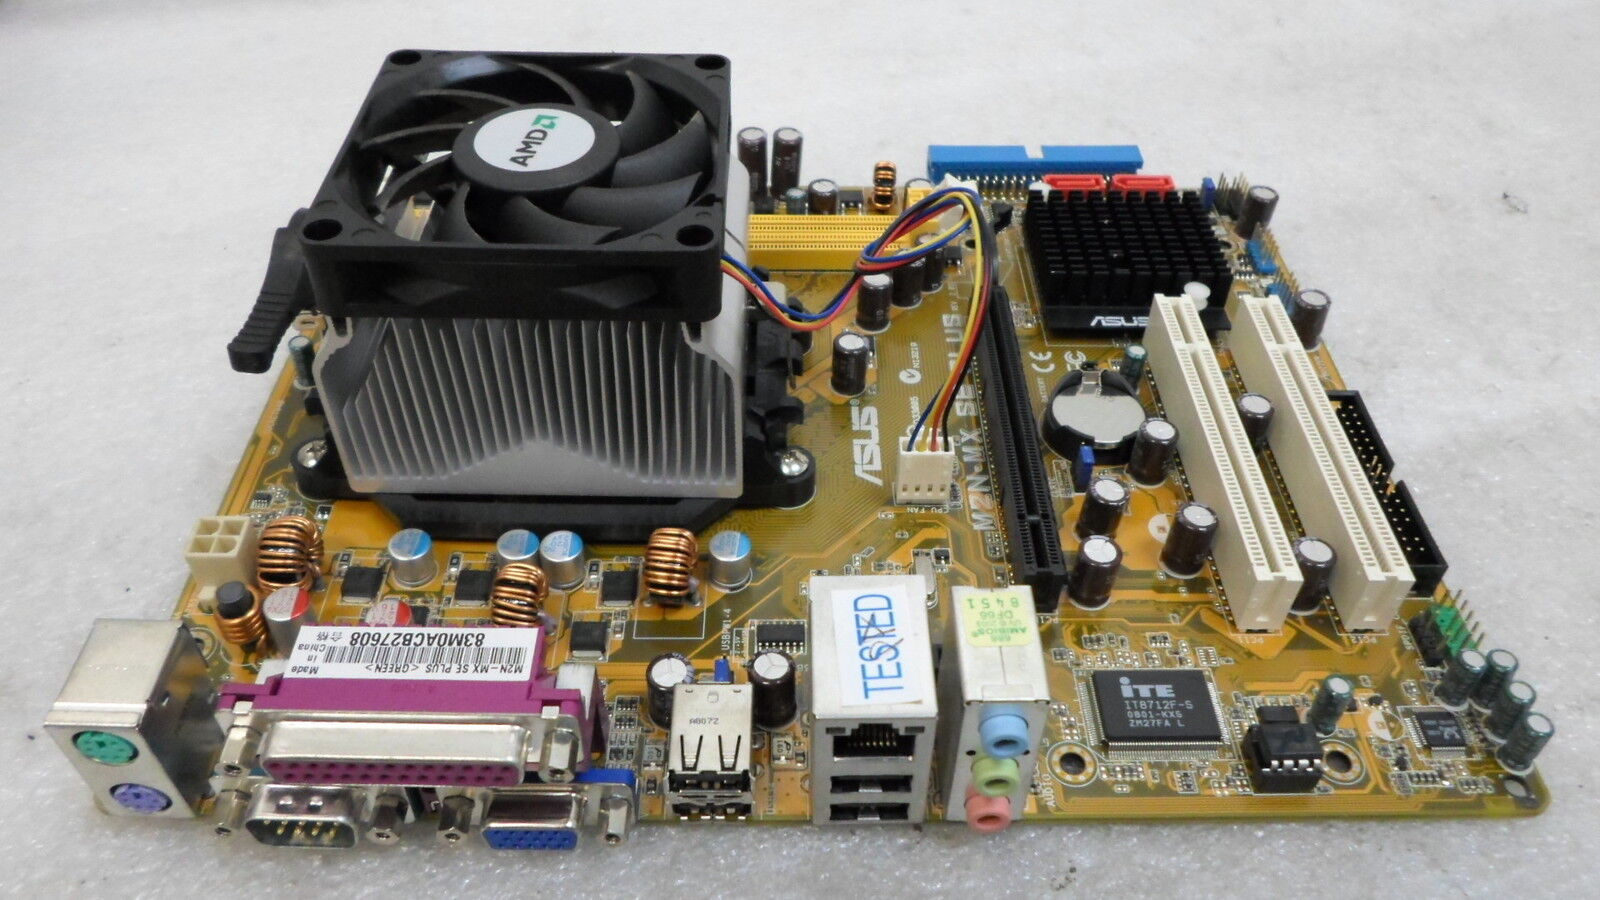 ASUS M2N-MX SE PLUS Motherboard w/ AMD Athlon 64 X2 & AV-Z7LH007001-4407 TESTED